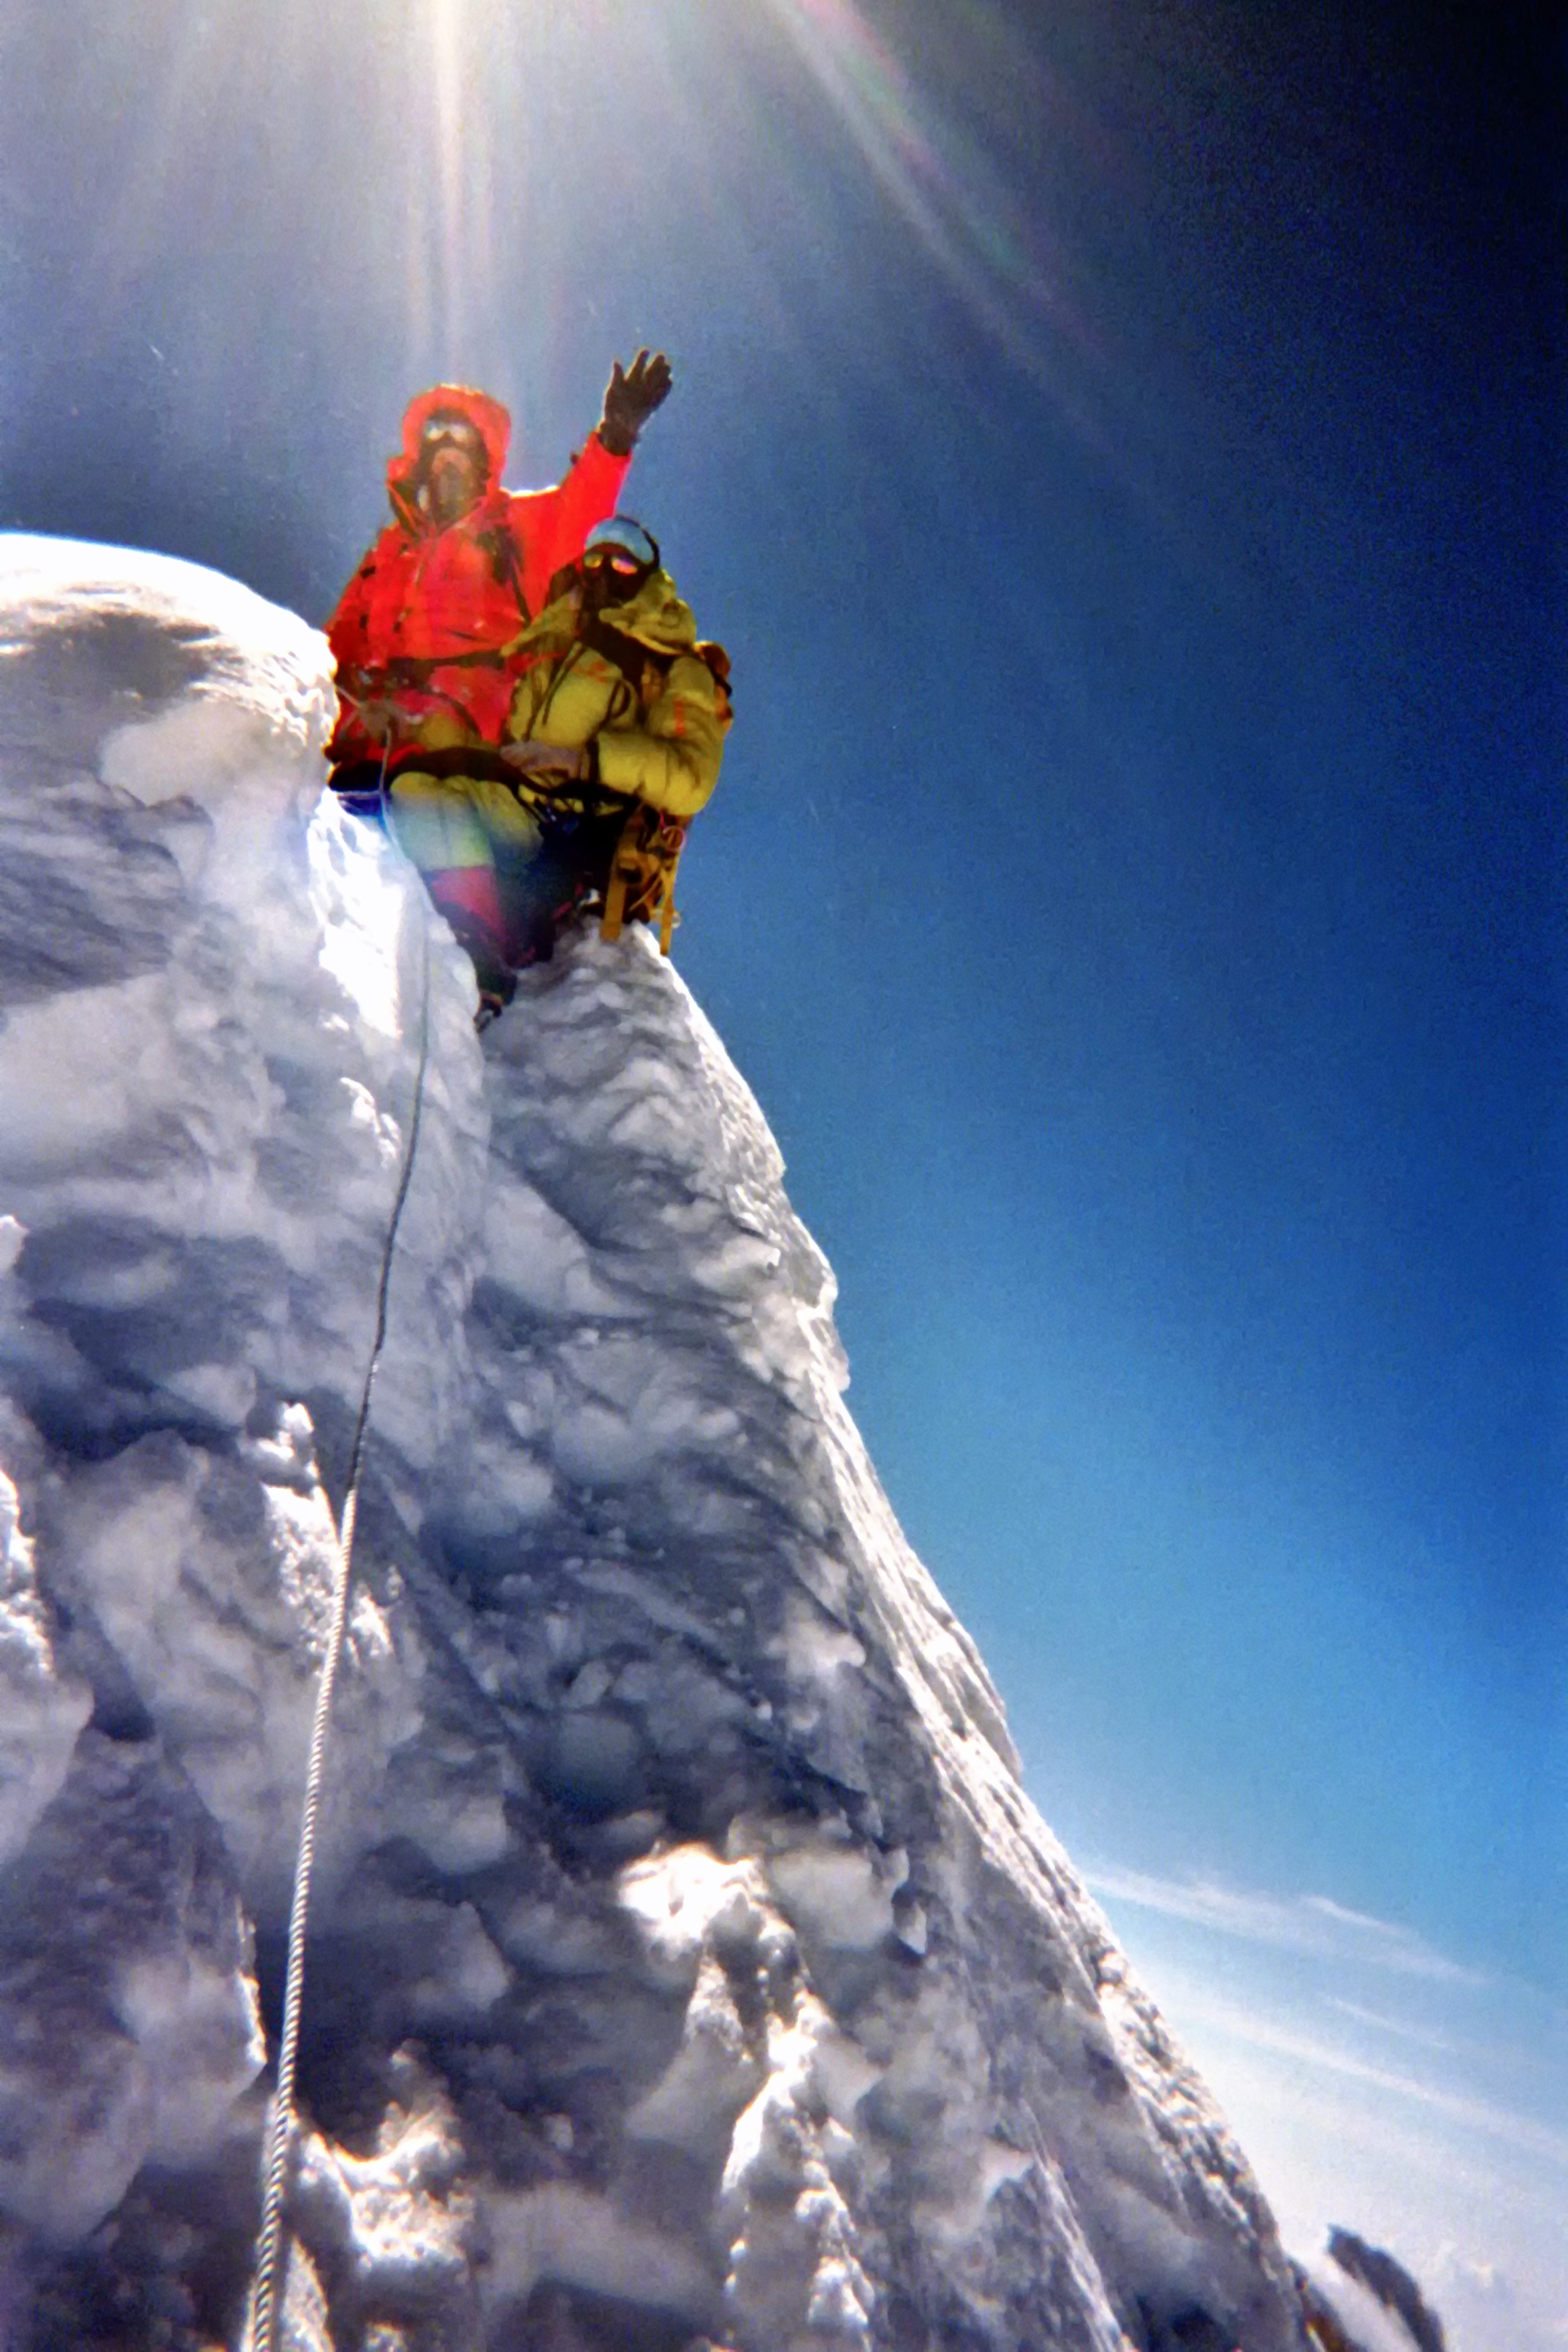 Andreas on Manaslu summit at 8165m